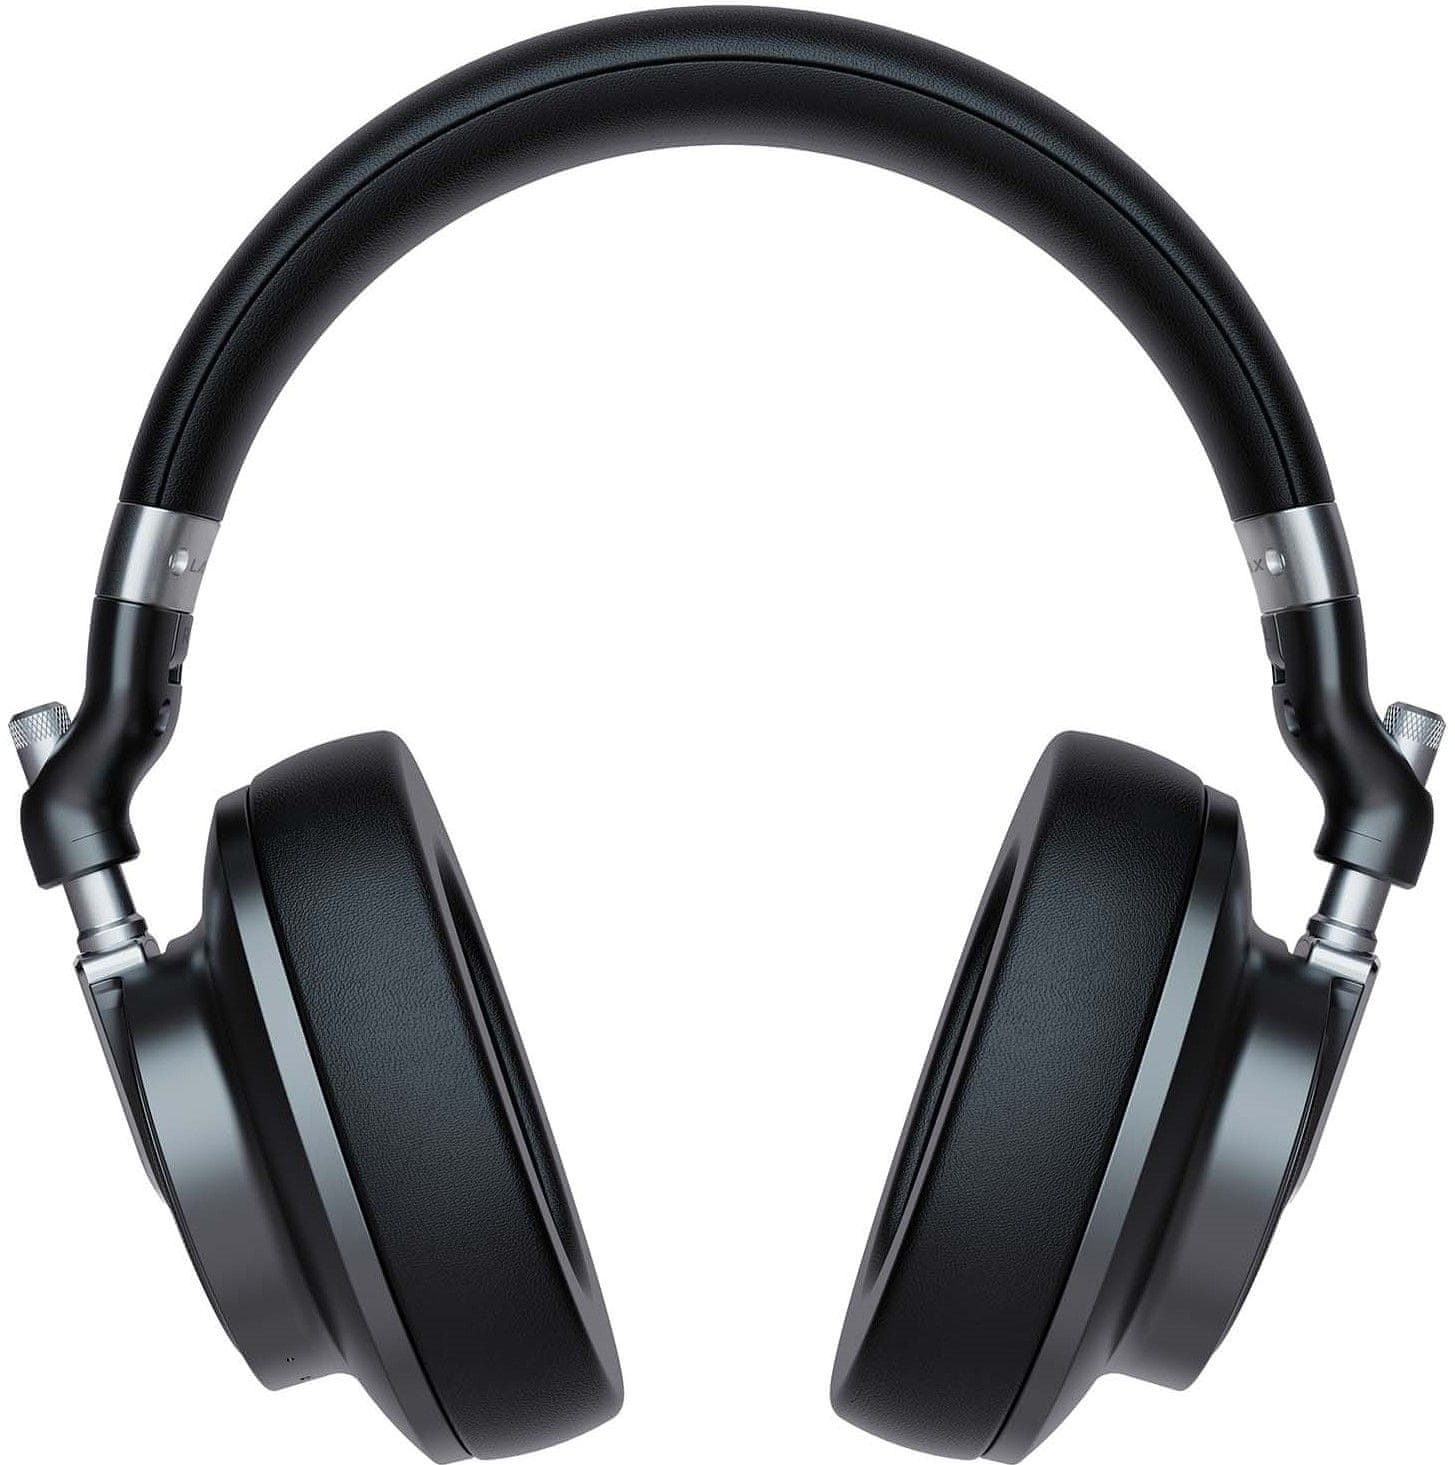  Moderne LAMAX Highcomfort ANC Bluetooth slušalice imaju USB-C priključak za punjenje s funkcijom brzog punjenja. Baterija drži do 50 sati. Udobne na ušima. Uključuju handsfree mikrofon. 